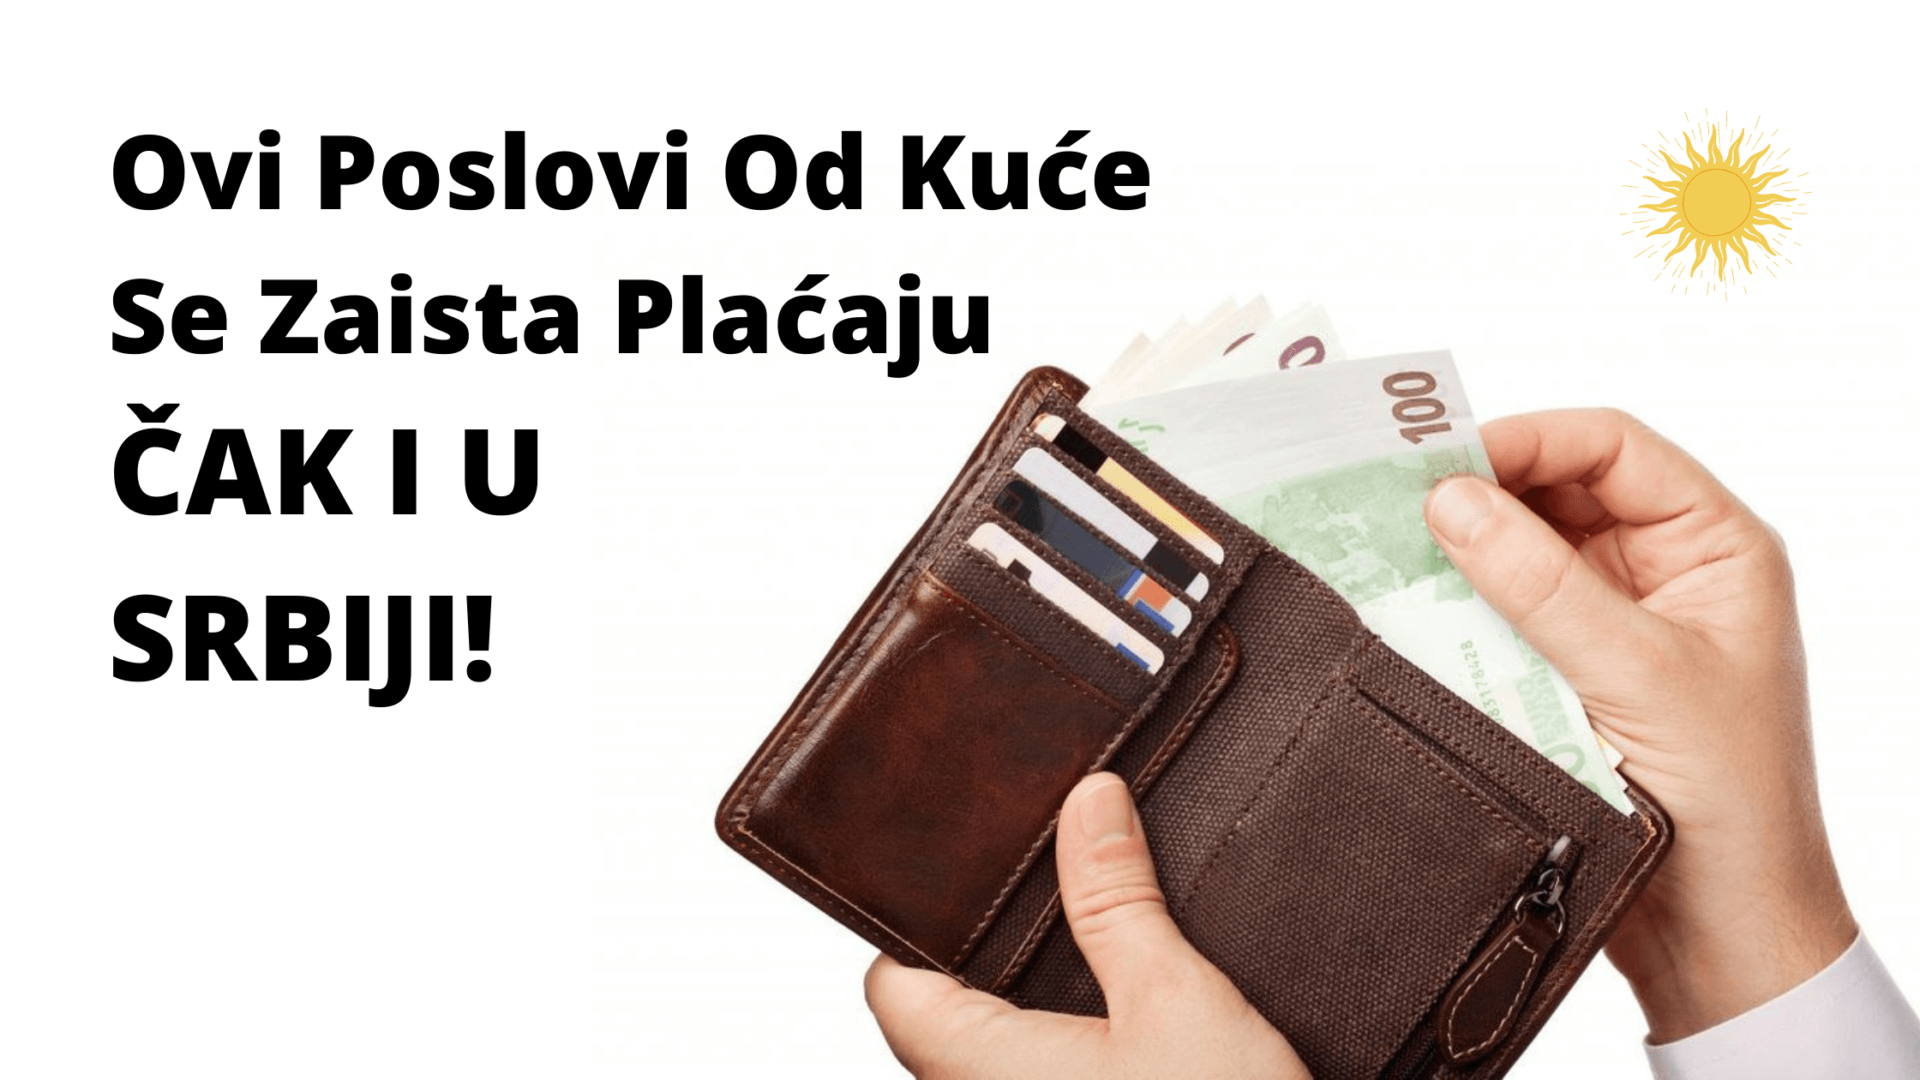 Online Posao Od Kuce Srbija – Kako Sam Ja Uspeo